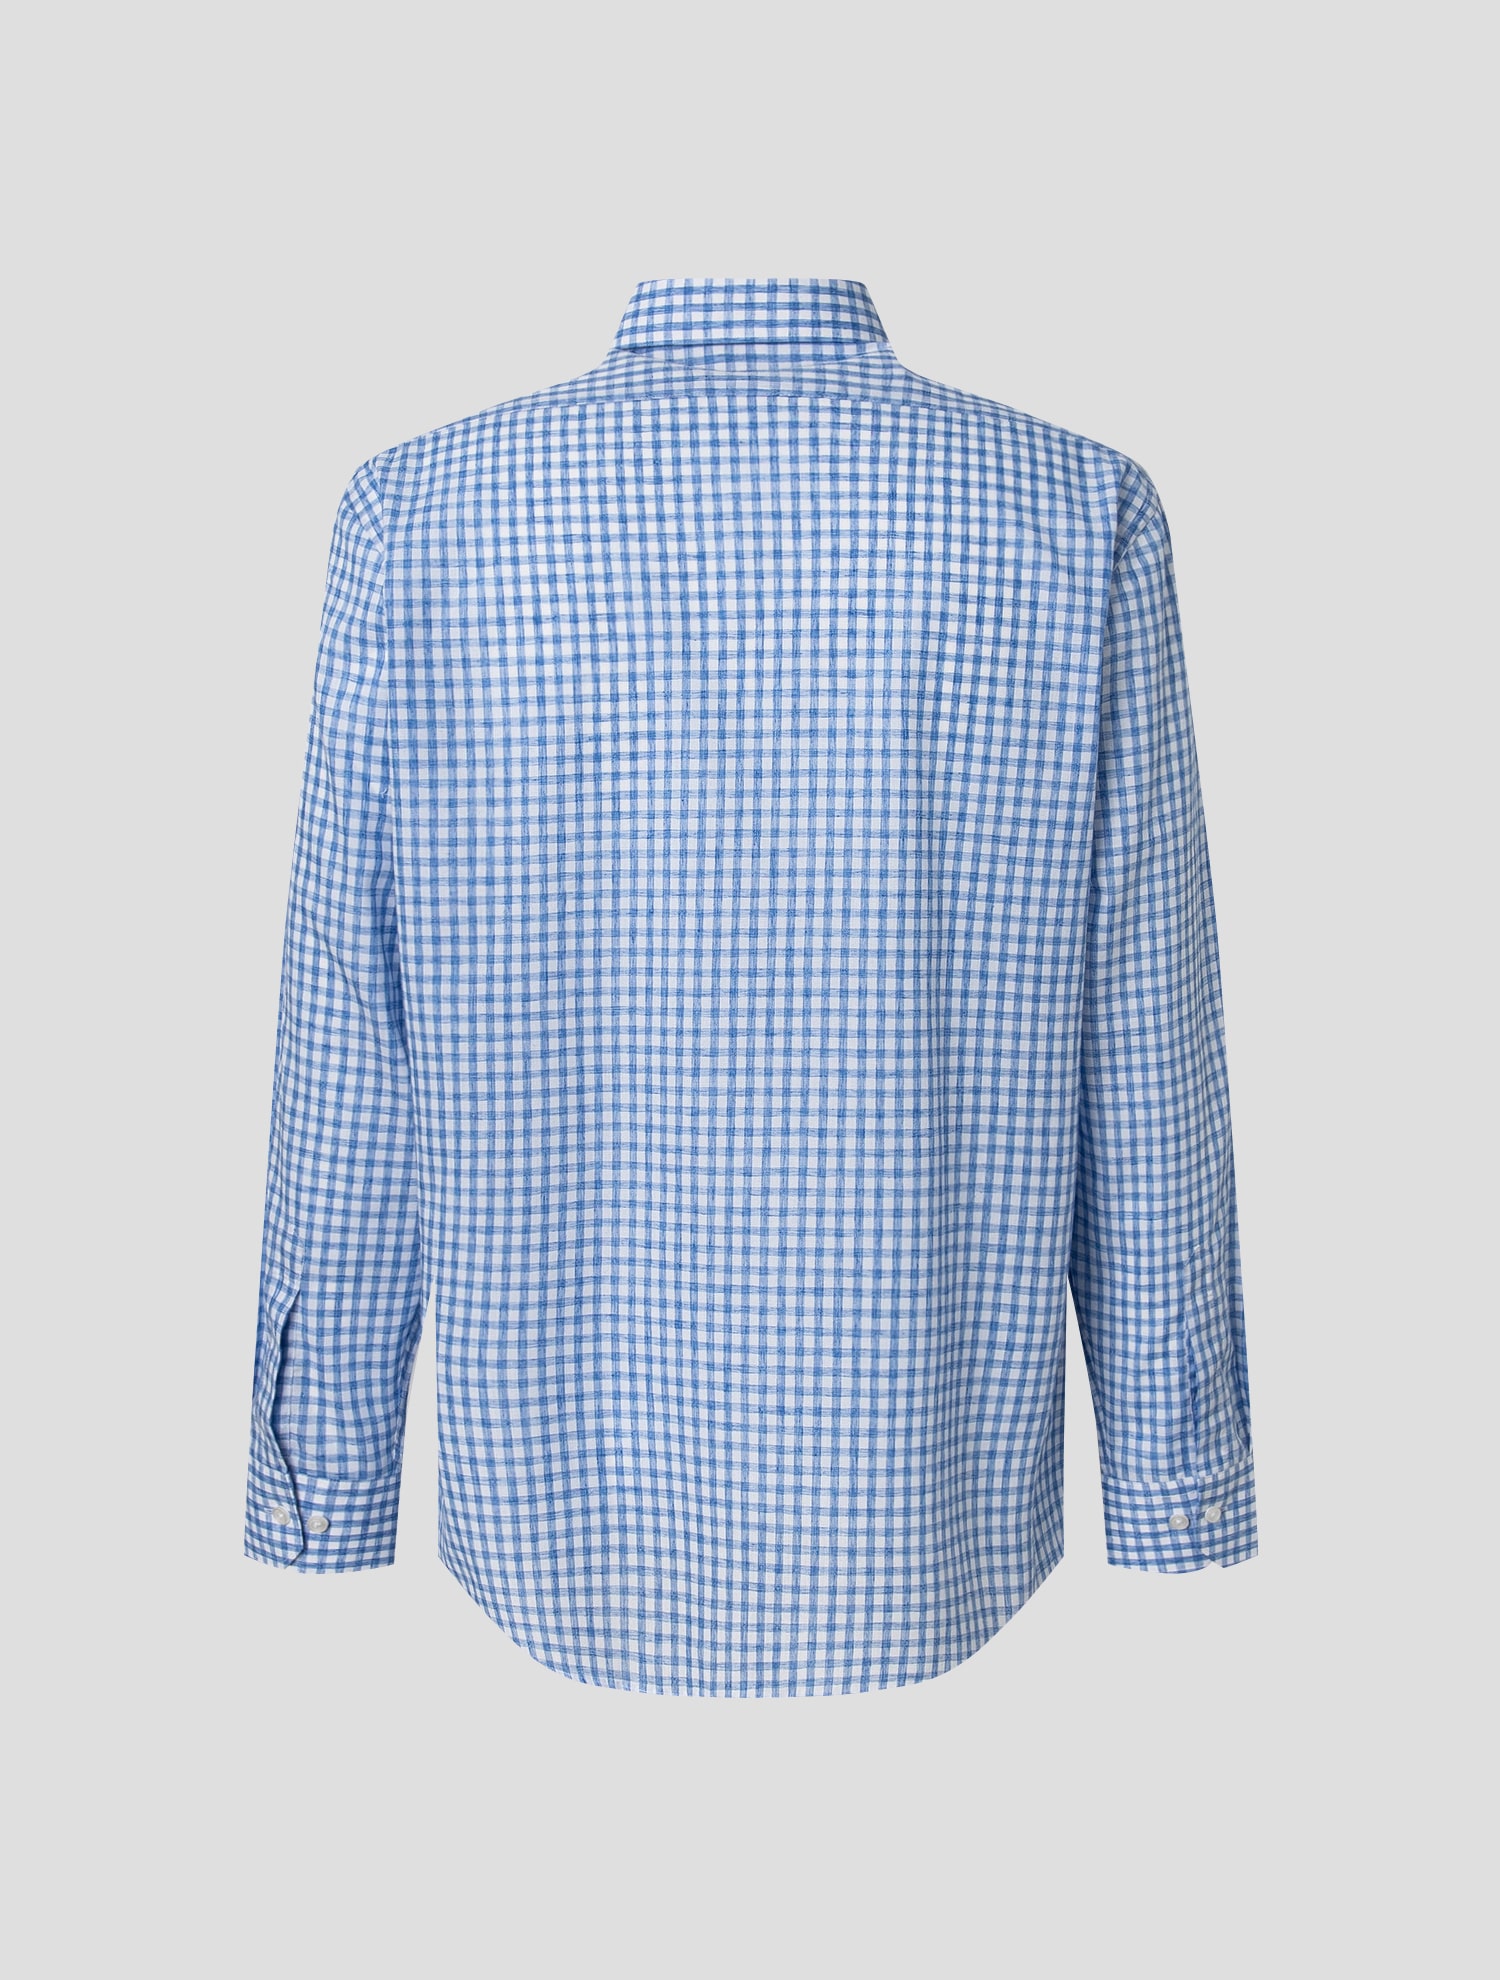 Rogatis-네이비 멜란지 깅엄 체크 패턴 레귤러핏 셔츠│삼성물산 온라인몰 Ssf Shop